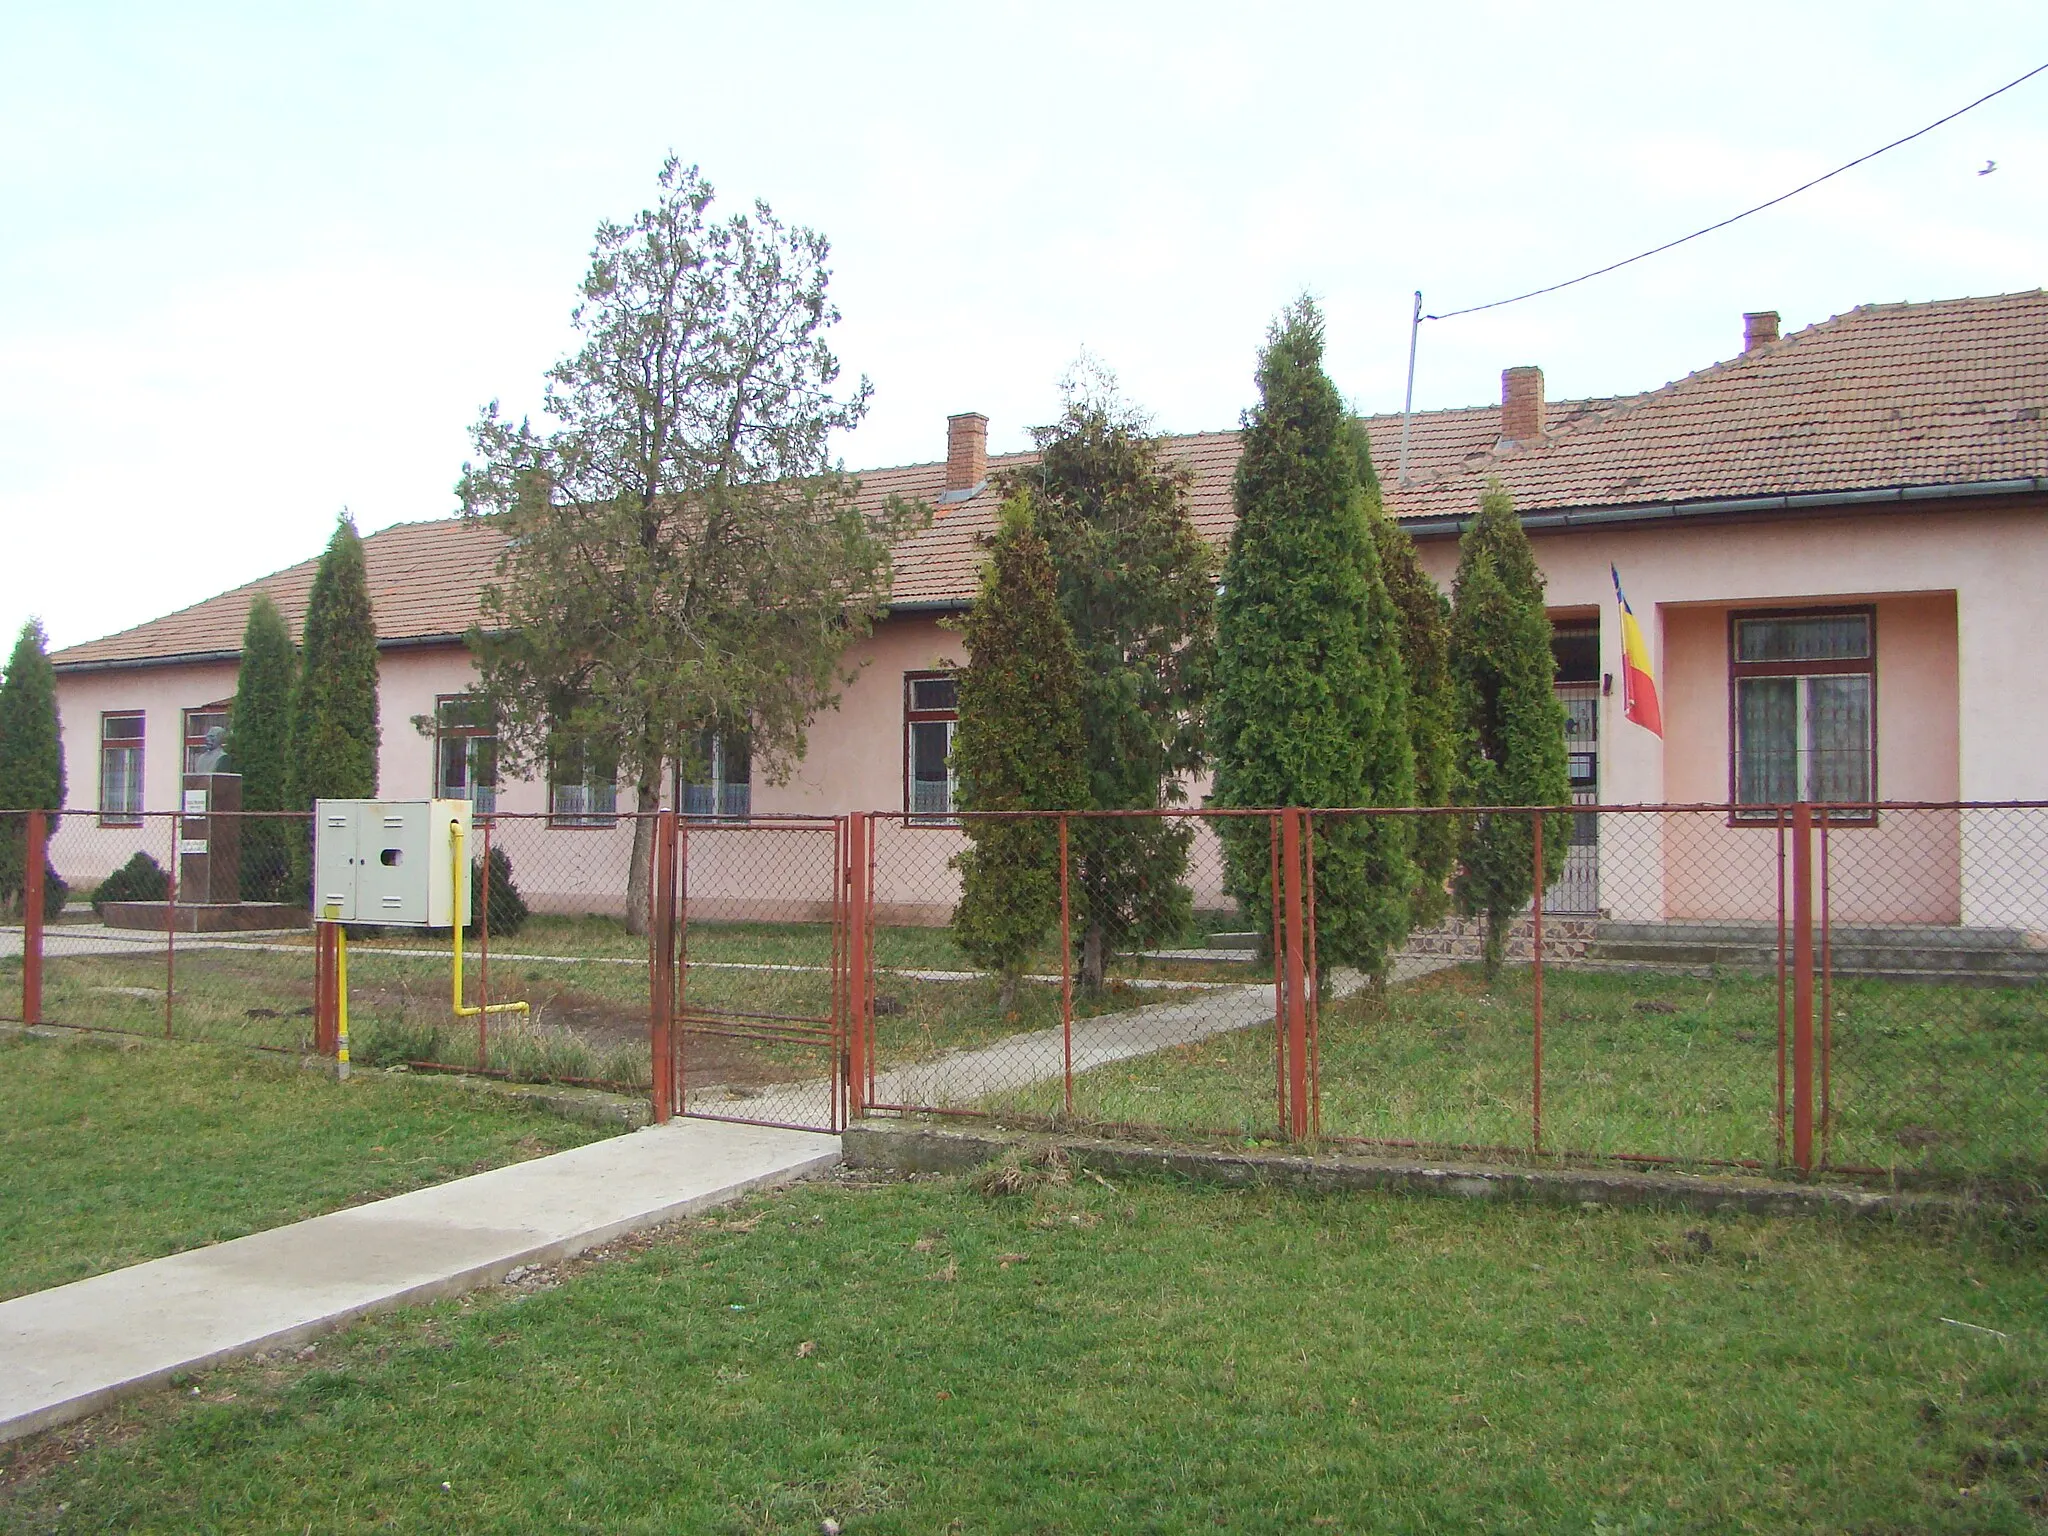 Photo showing: Chirileu, Mureș county, Romania